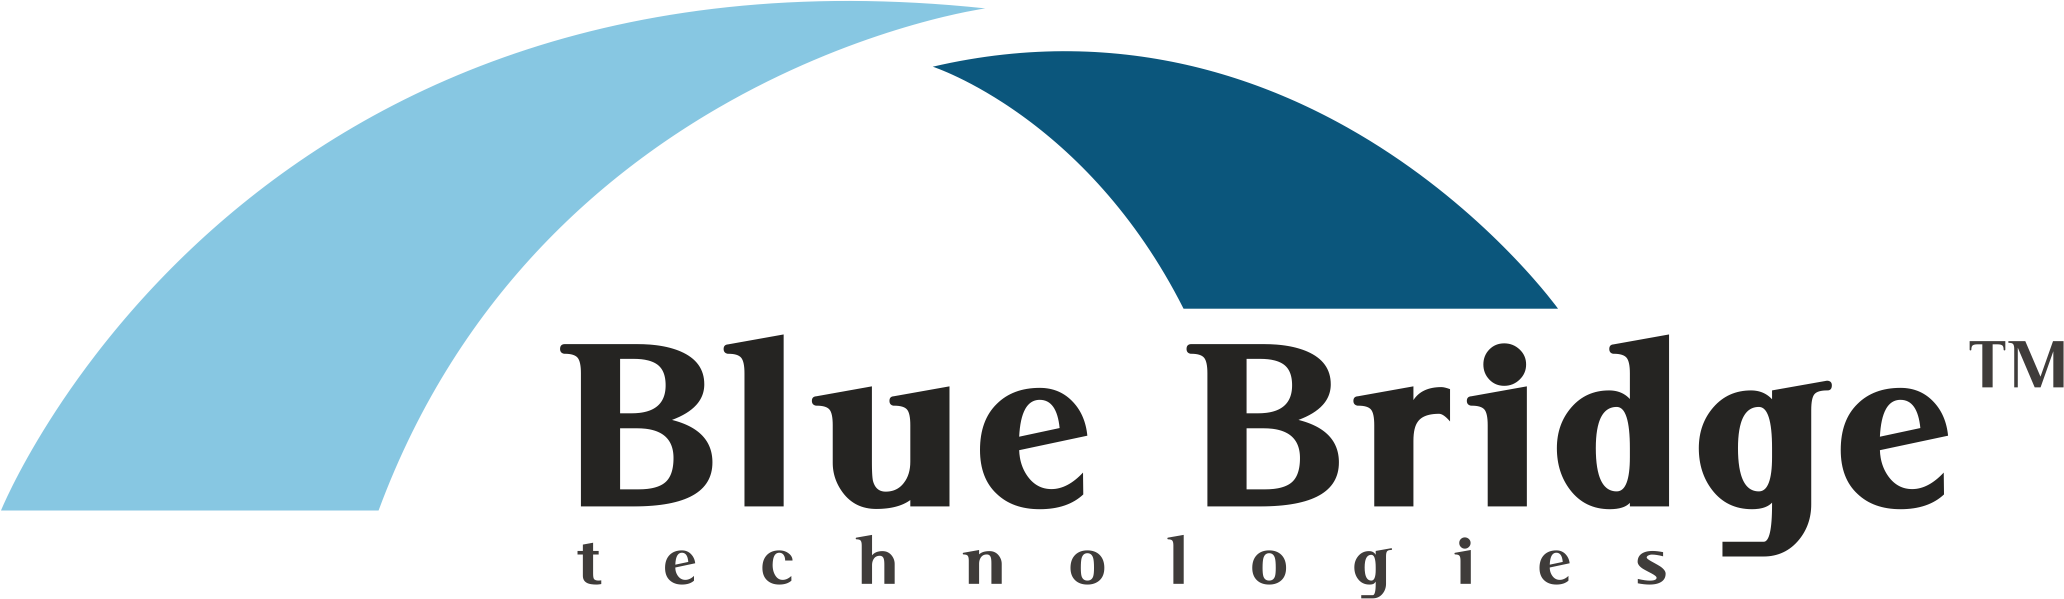 Blue Bridge Technologies DEAC